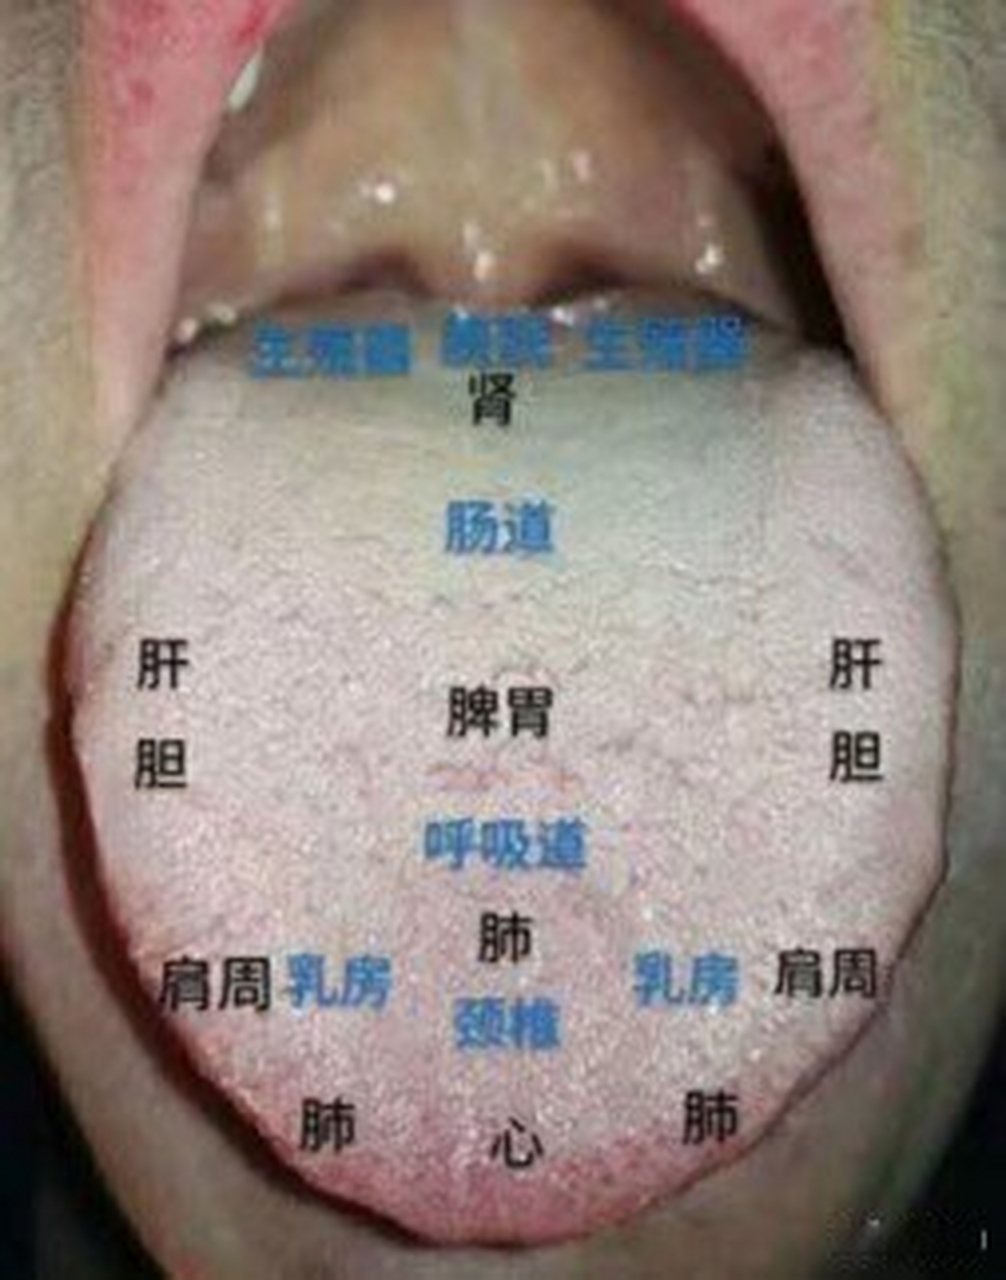 舌头图解各部位名称图片